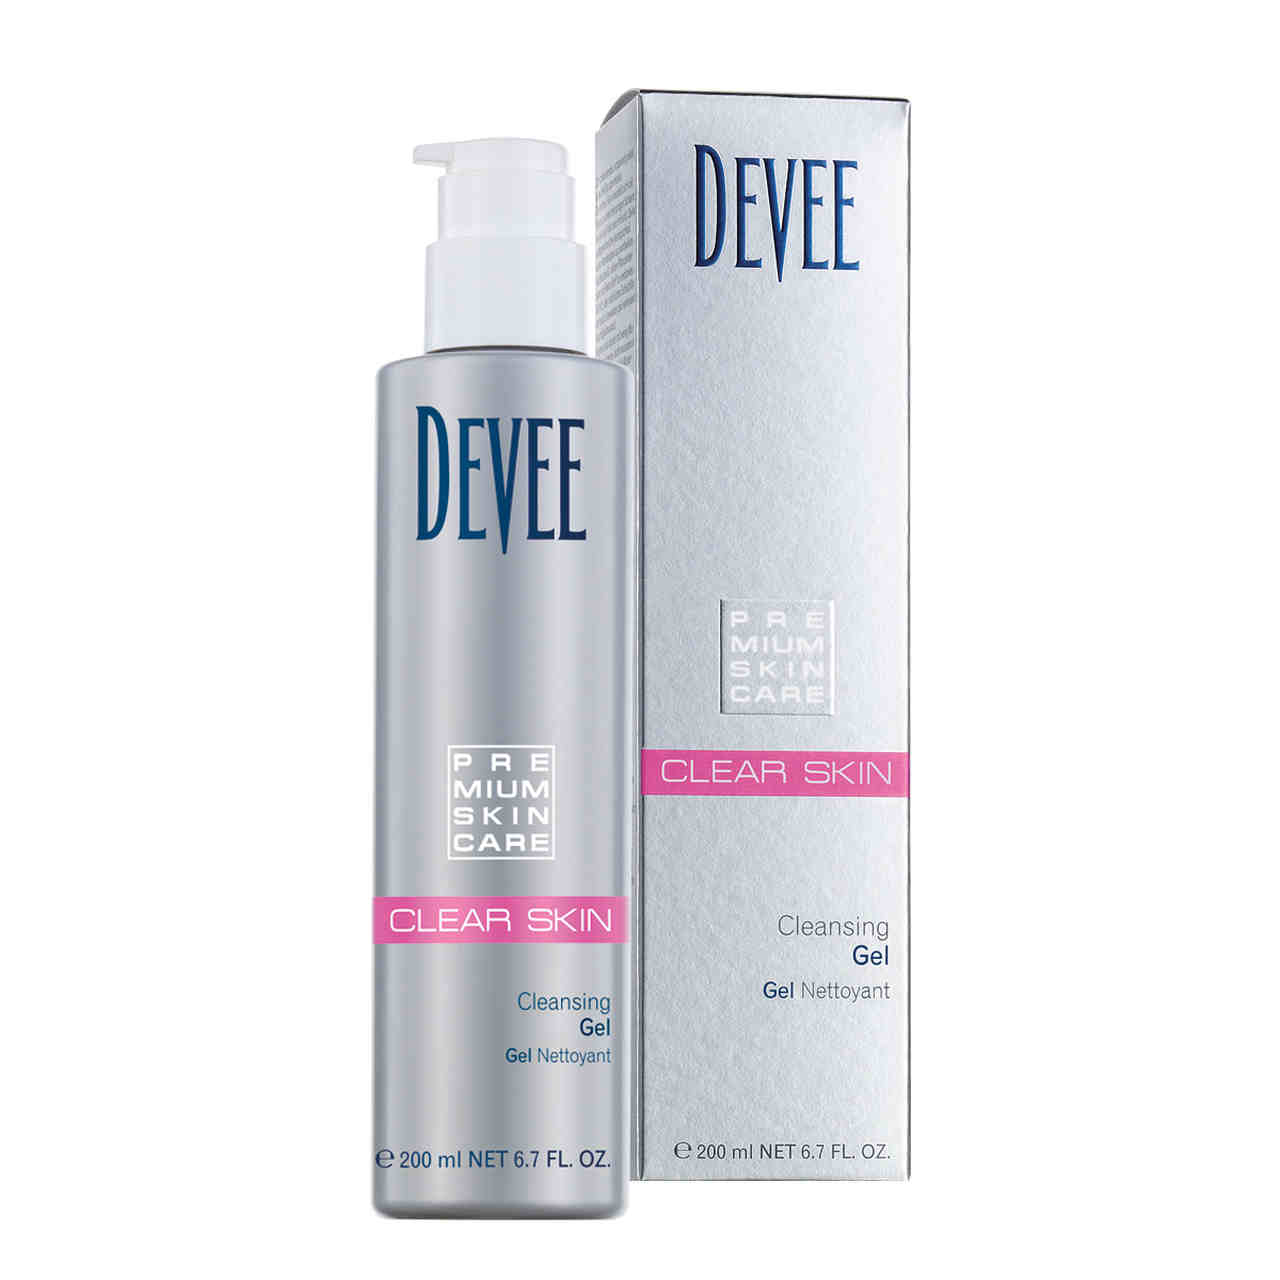 DEVEE Clear Skin Cleansing Gel 200ml